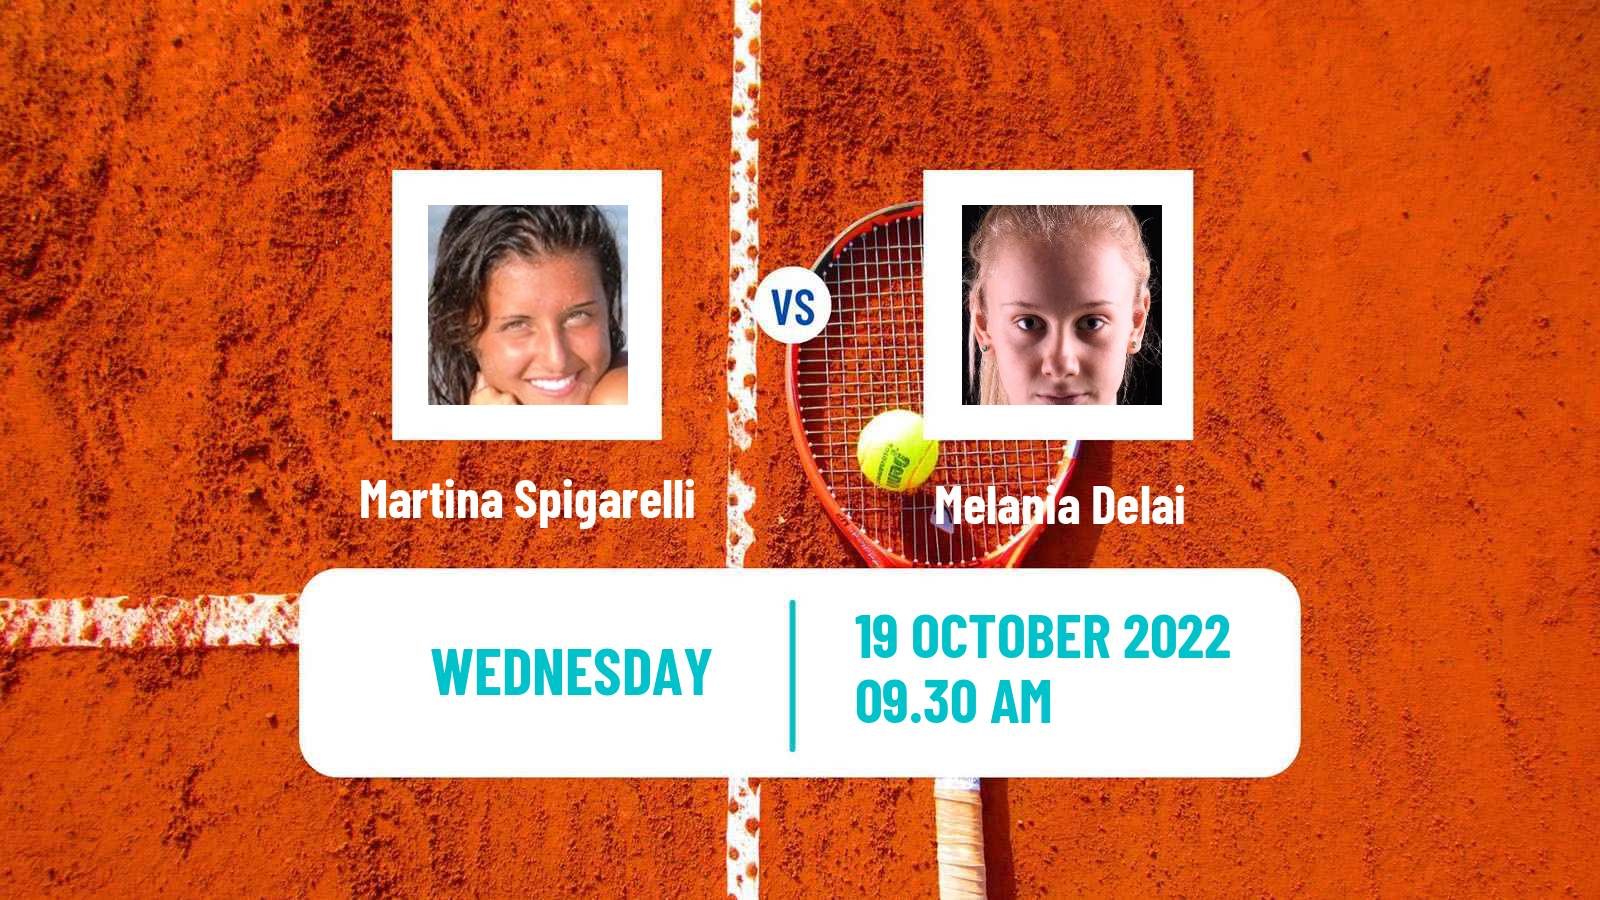 Tennis ITF Tournaments Martina Spigarelli - Melania Delai